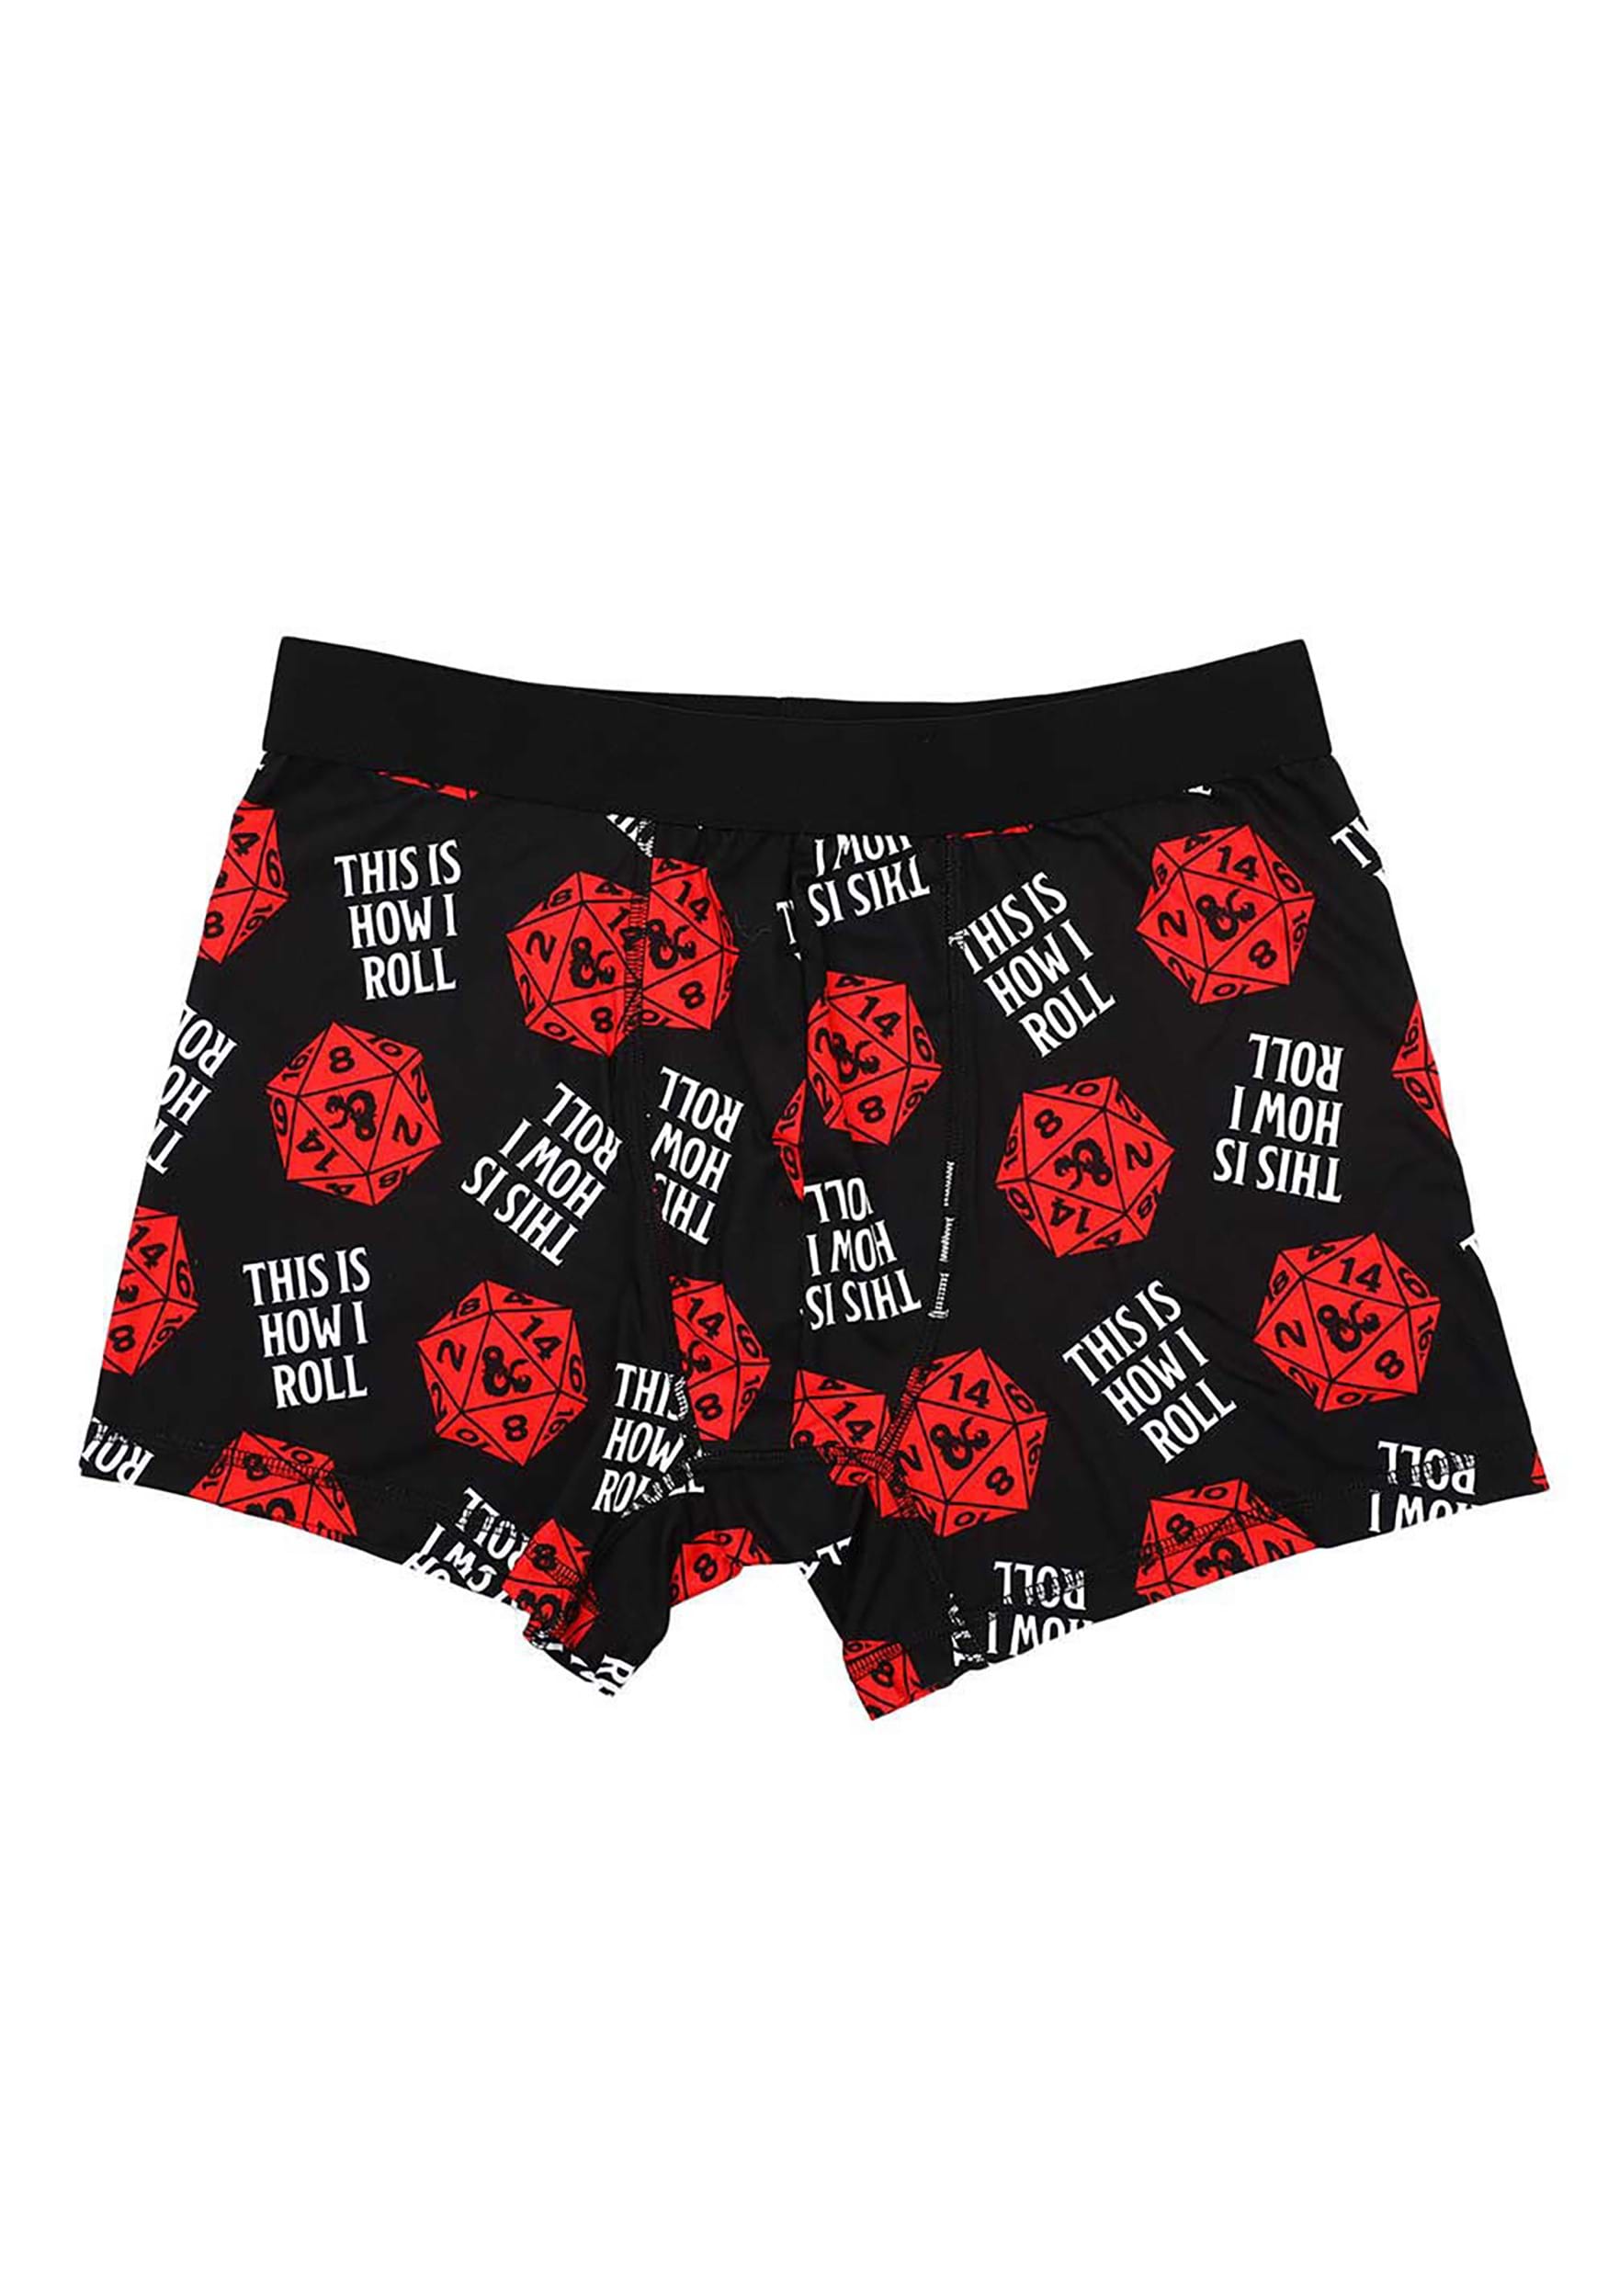 Odd Sox, Back To The Future, Men's Underwear Boxer Briefs, Funny Prints, XL  